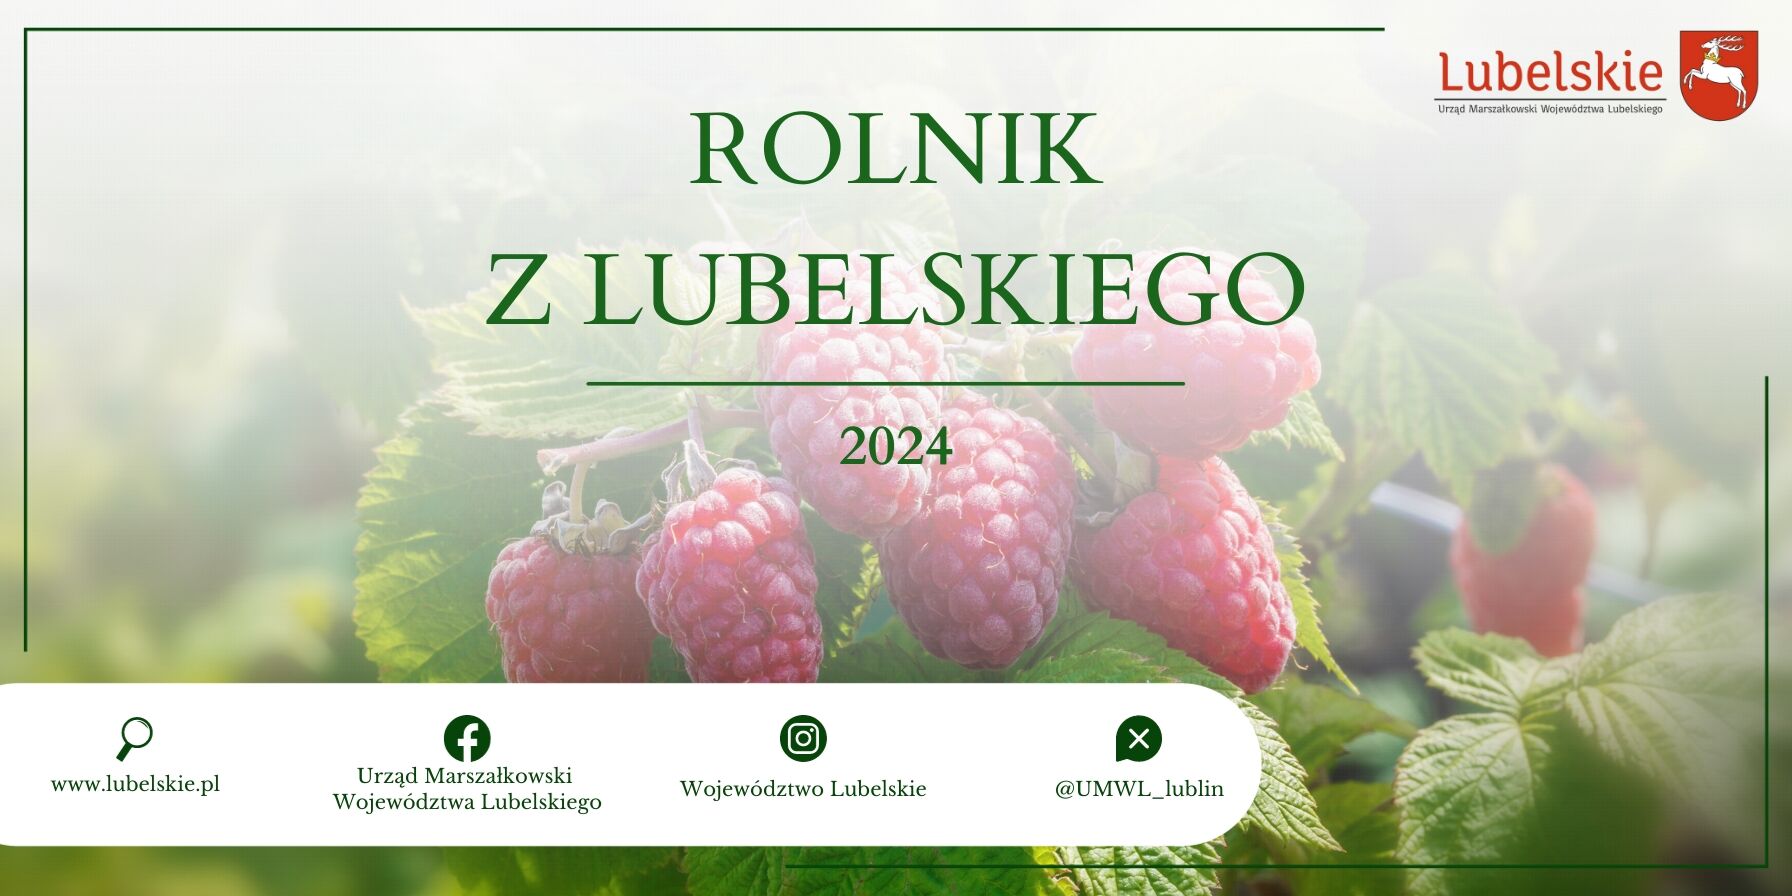 Baner promujący "Rolnik z Lubelskiego 2024" z wizerunkiem malin na pierwszym planie i rozmazanym tłem zieleni, wraz z logotypami i informacjami kontaktowymi.